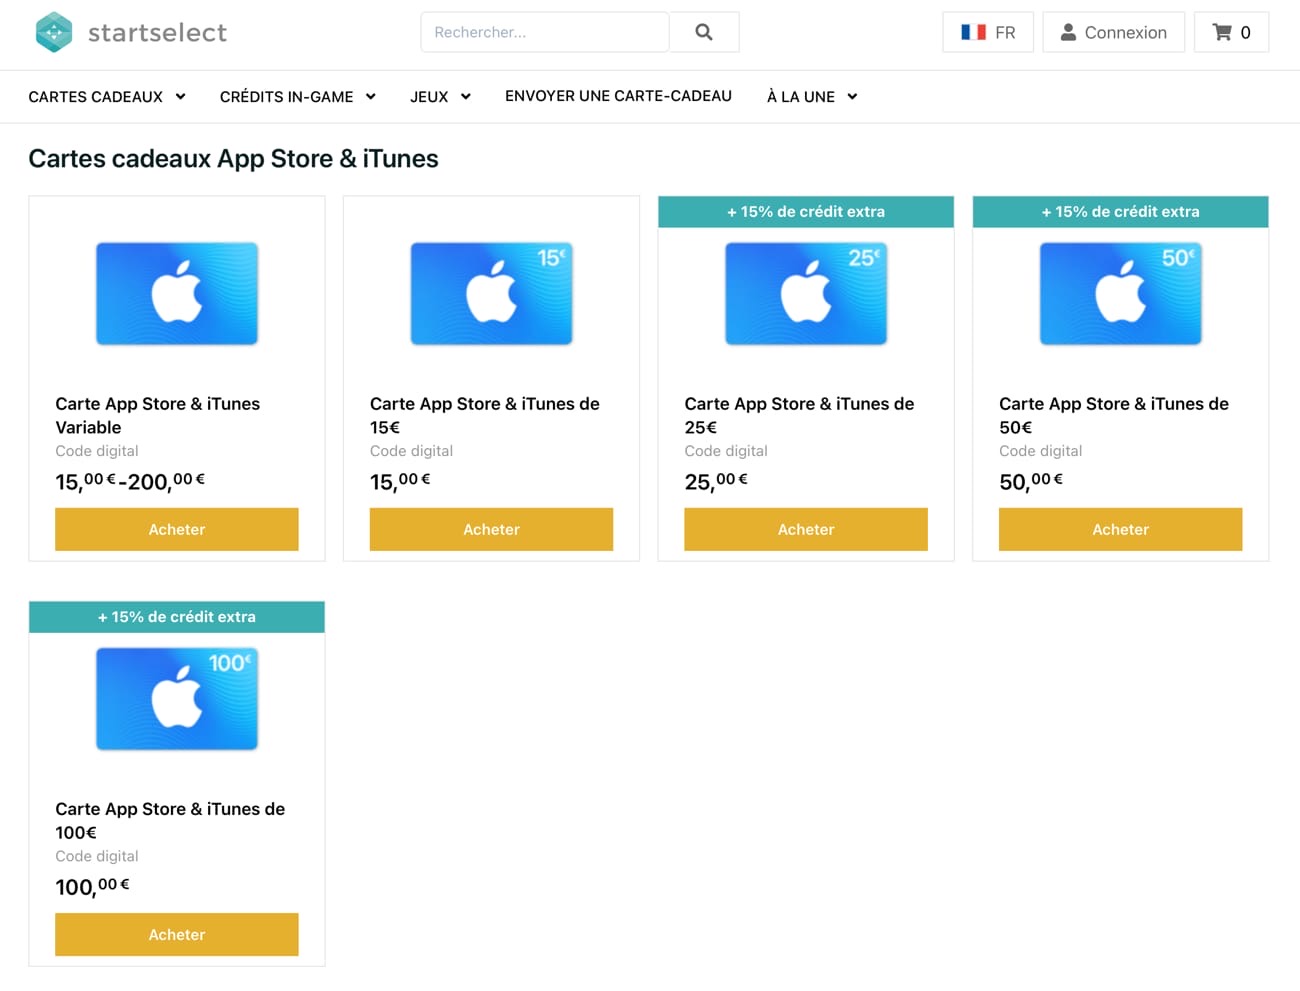 Carte App Store et iTunes, 10 €